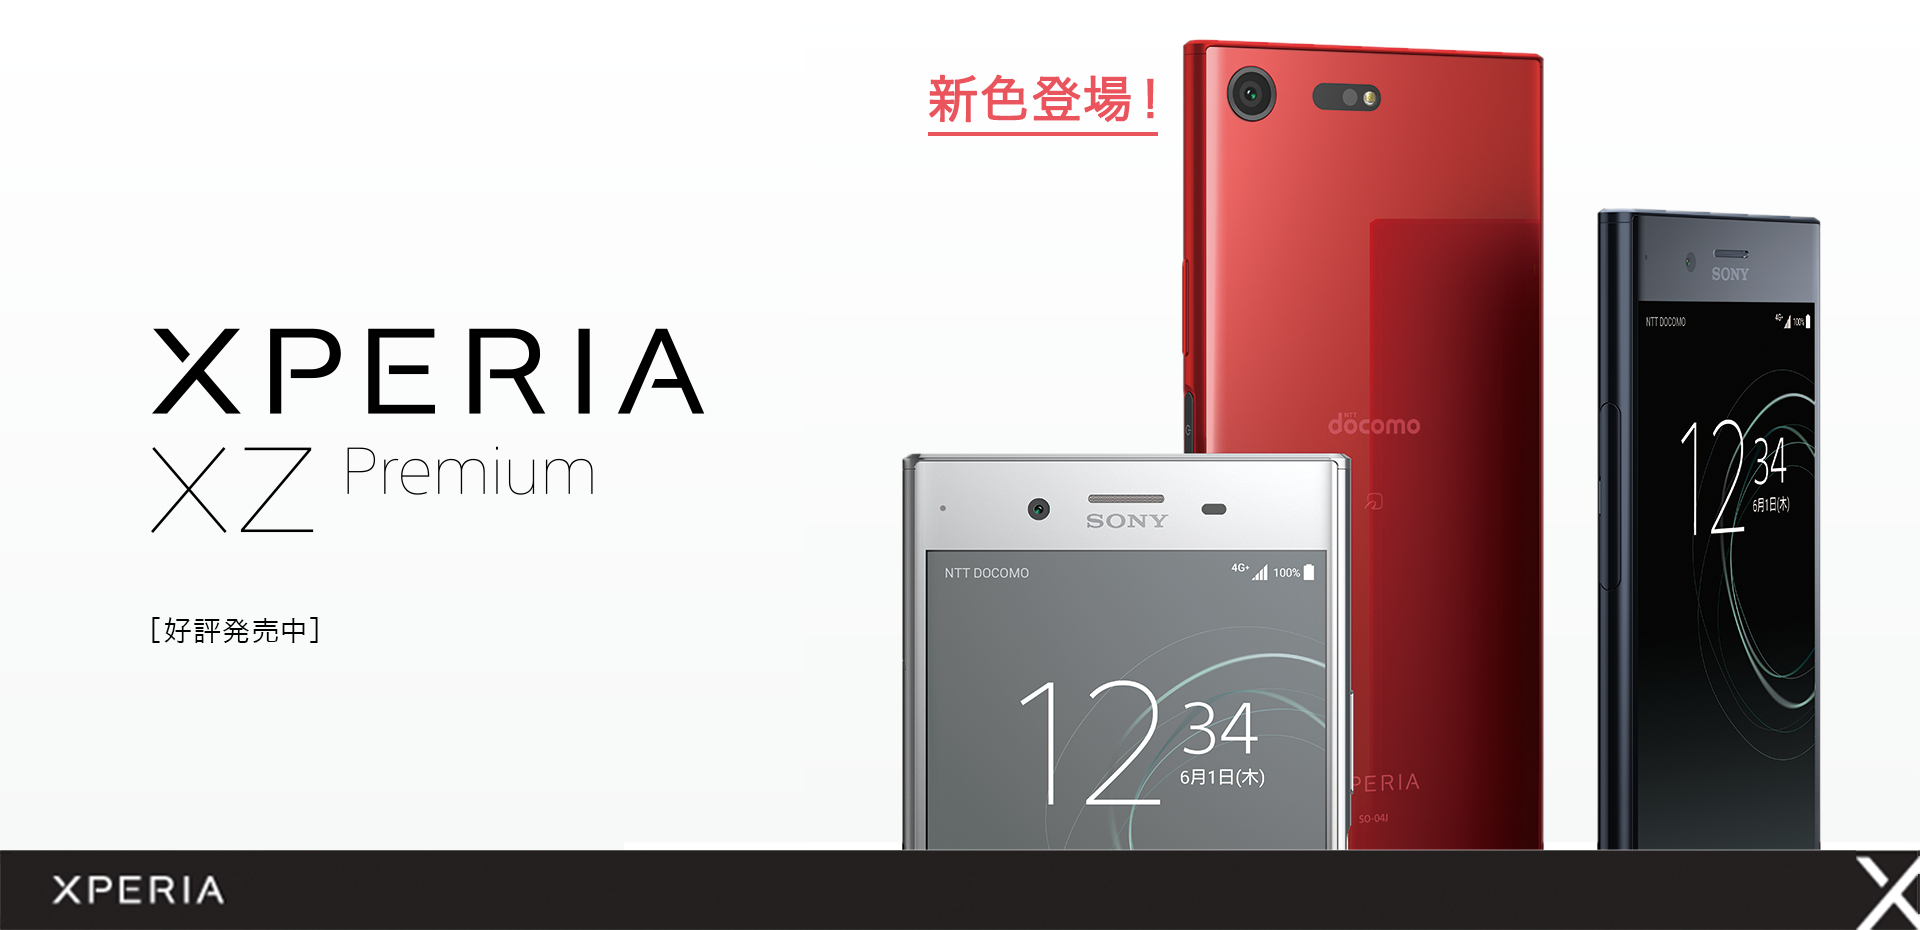 ドコモ Xperia Xz Premium So 04j が端末購入サポート対象に追加 Mnp一括1万5552円に